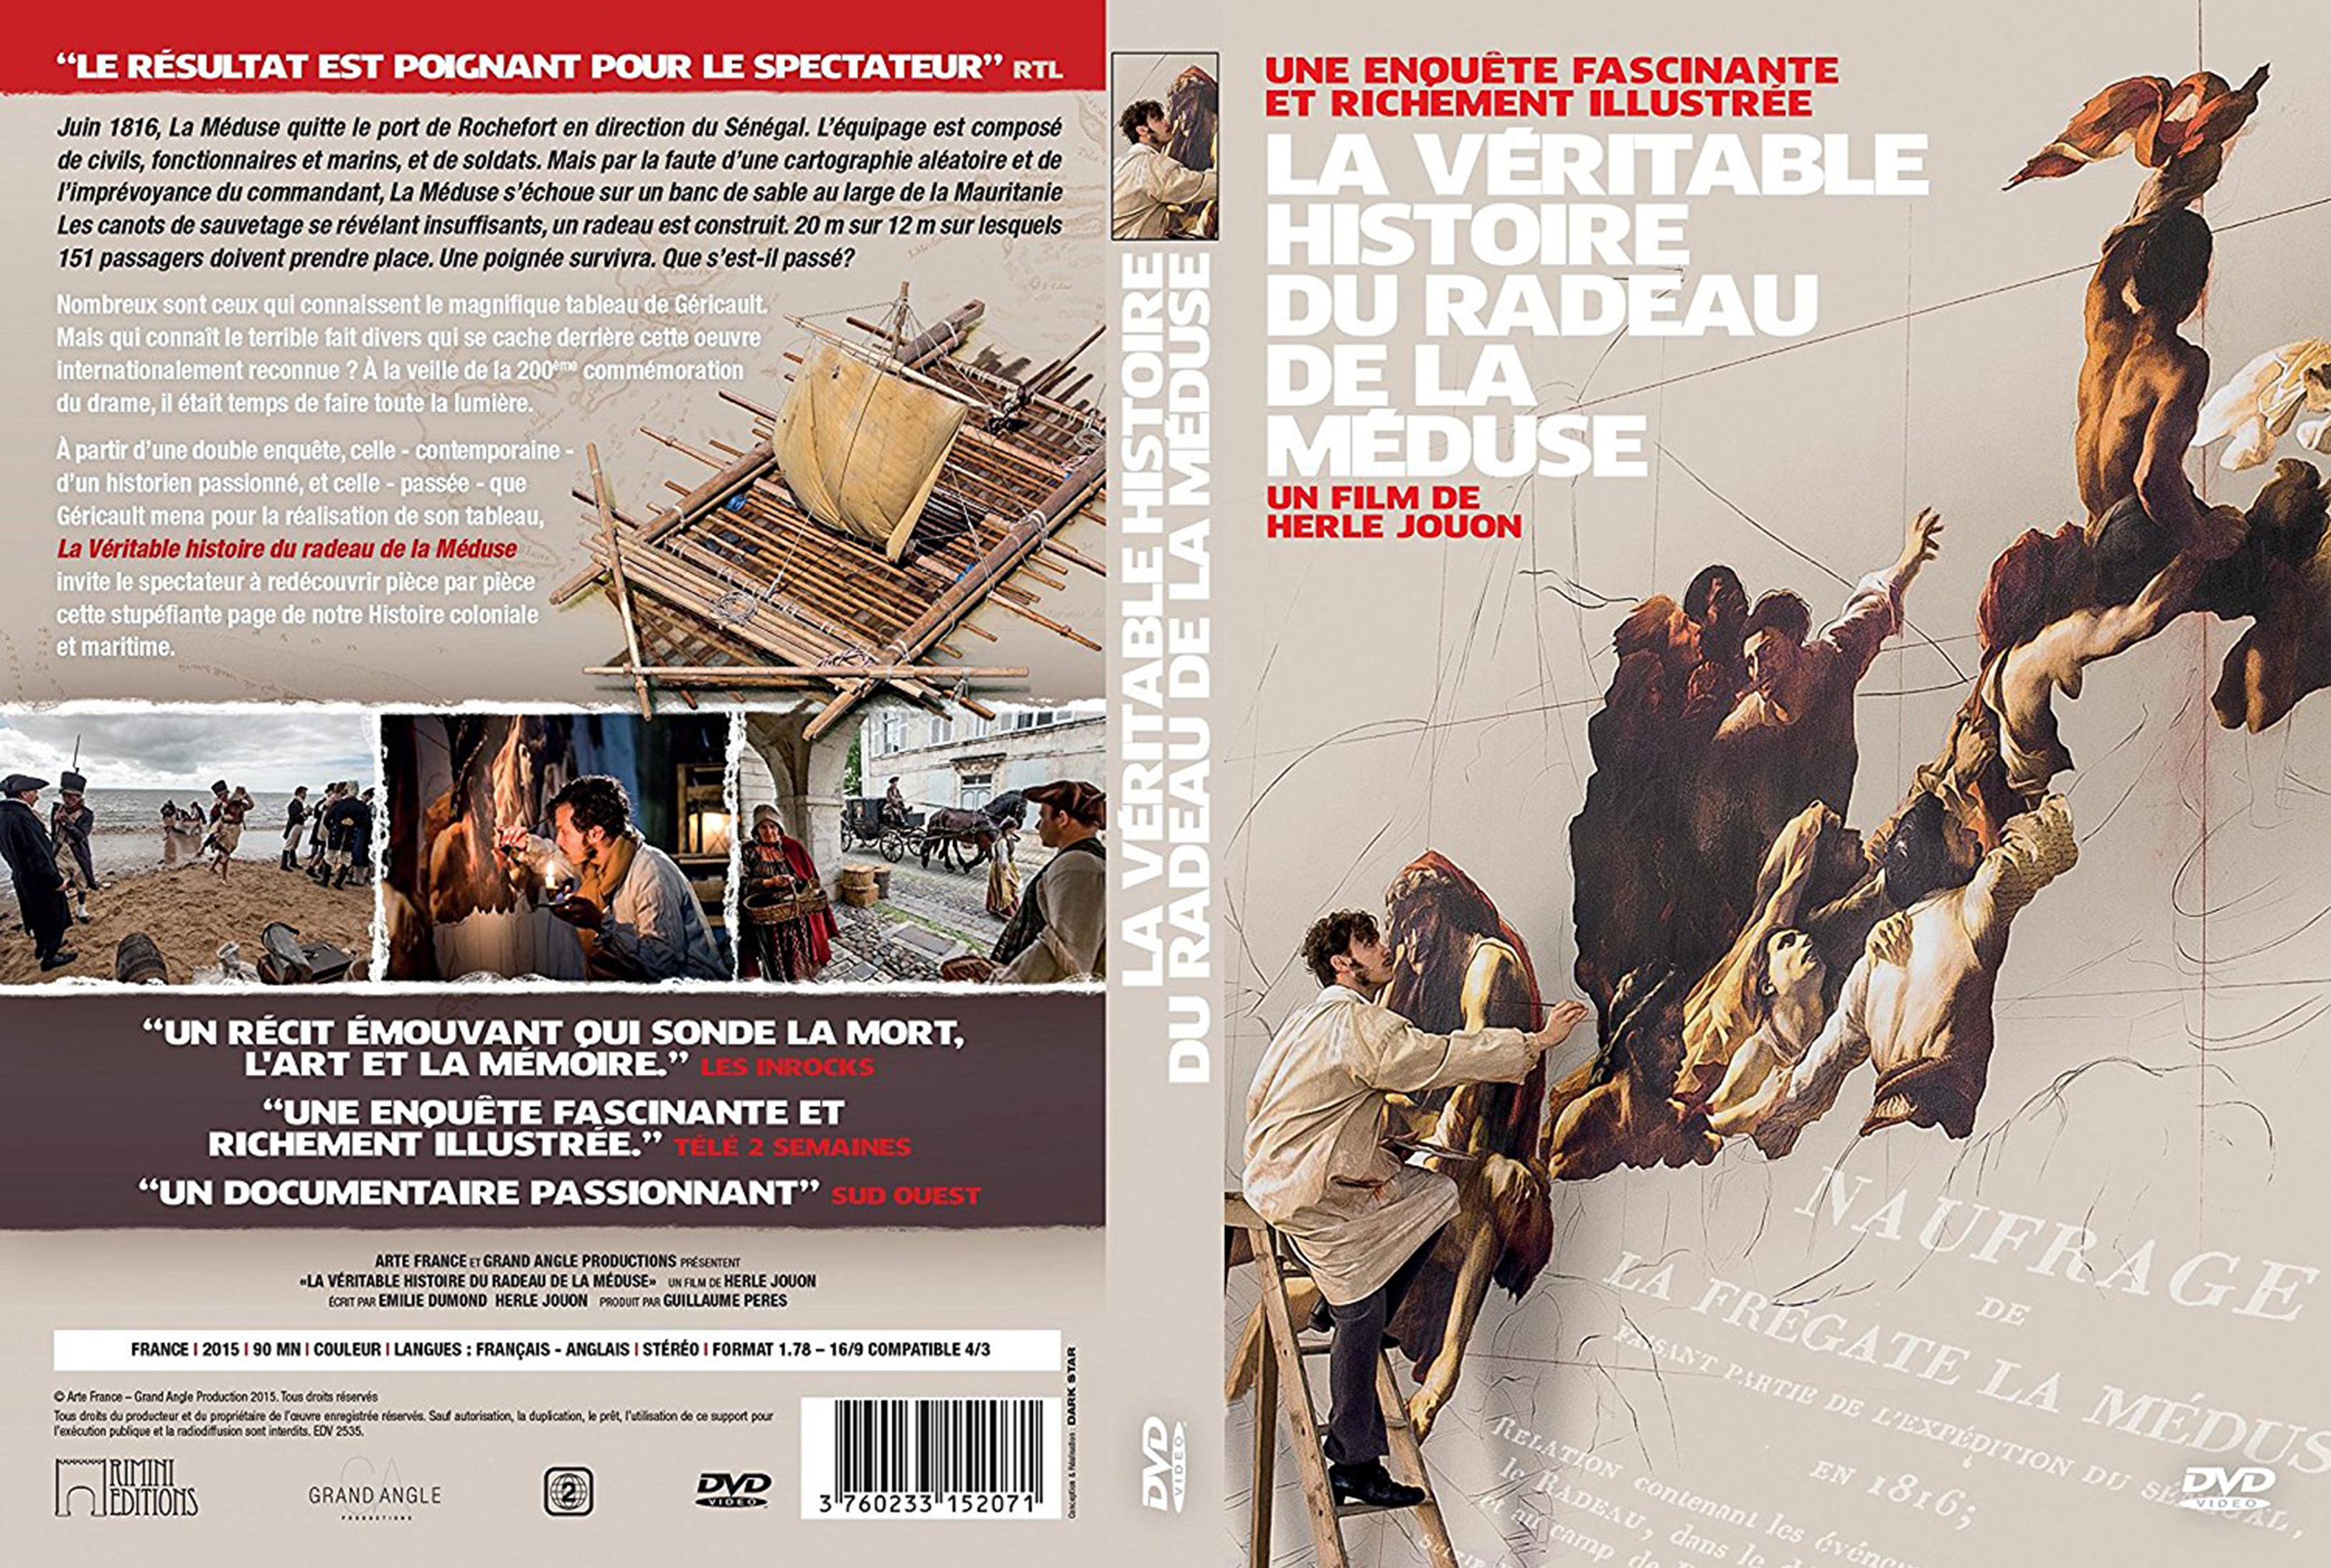 Jaquette DVD La vritable histoire du radeau de la mduse